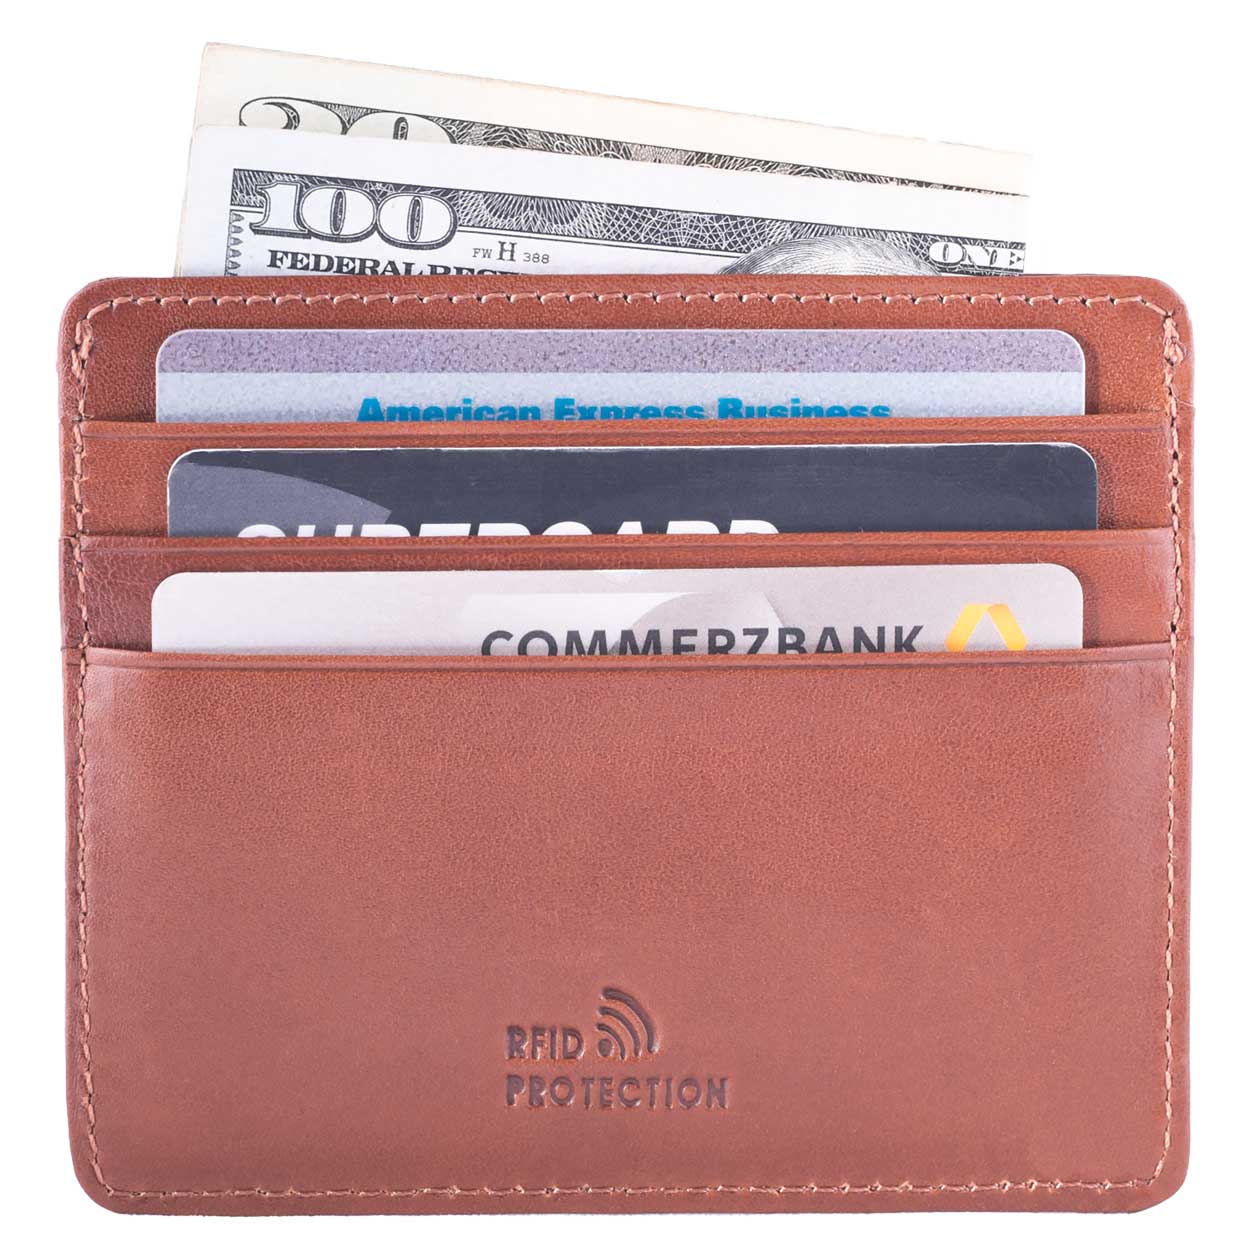 Bugatti Tan Nappa DiLoro Leather Ultra Slim RFID Blocking Minimalist Travel Card Wallet - Back View